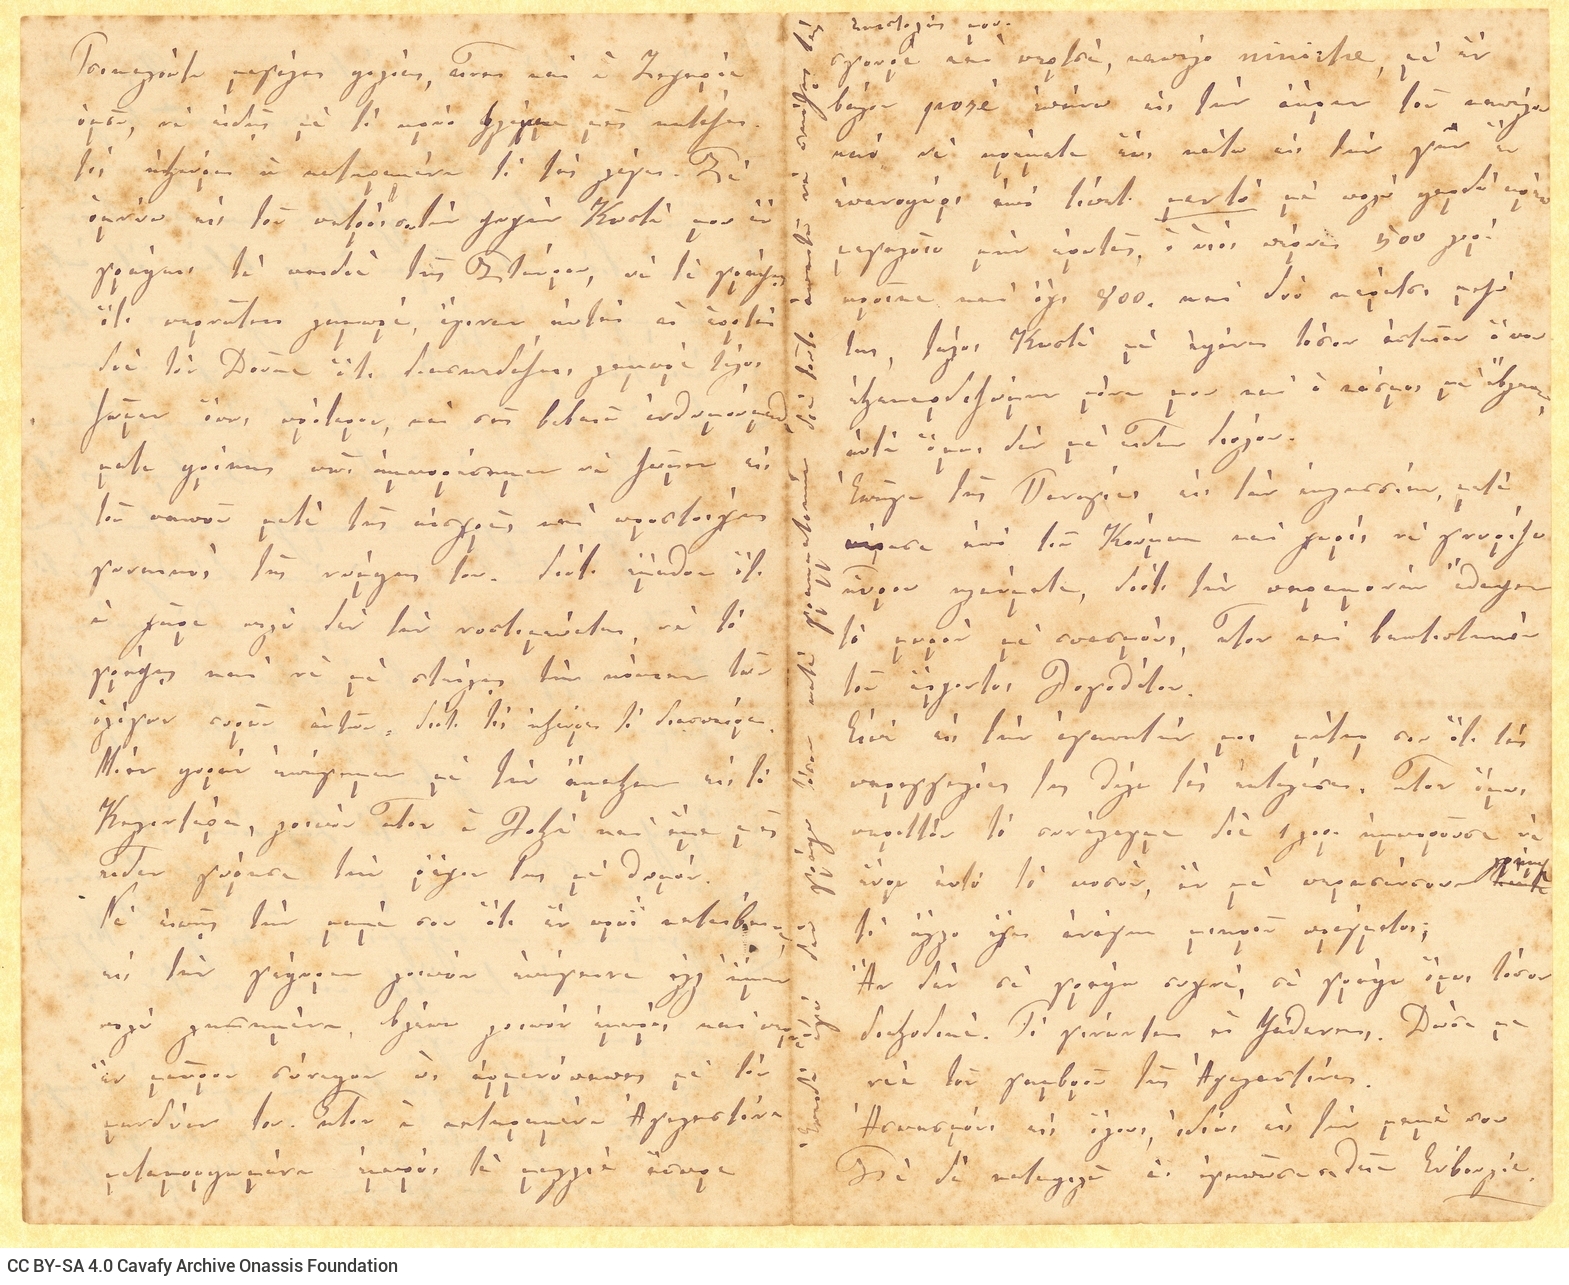 Σπάραγμα χειρόγραφης επιστολής της Ευβουλίας Παπαλαμπρινού προς το